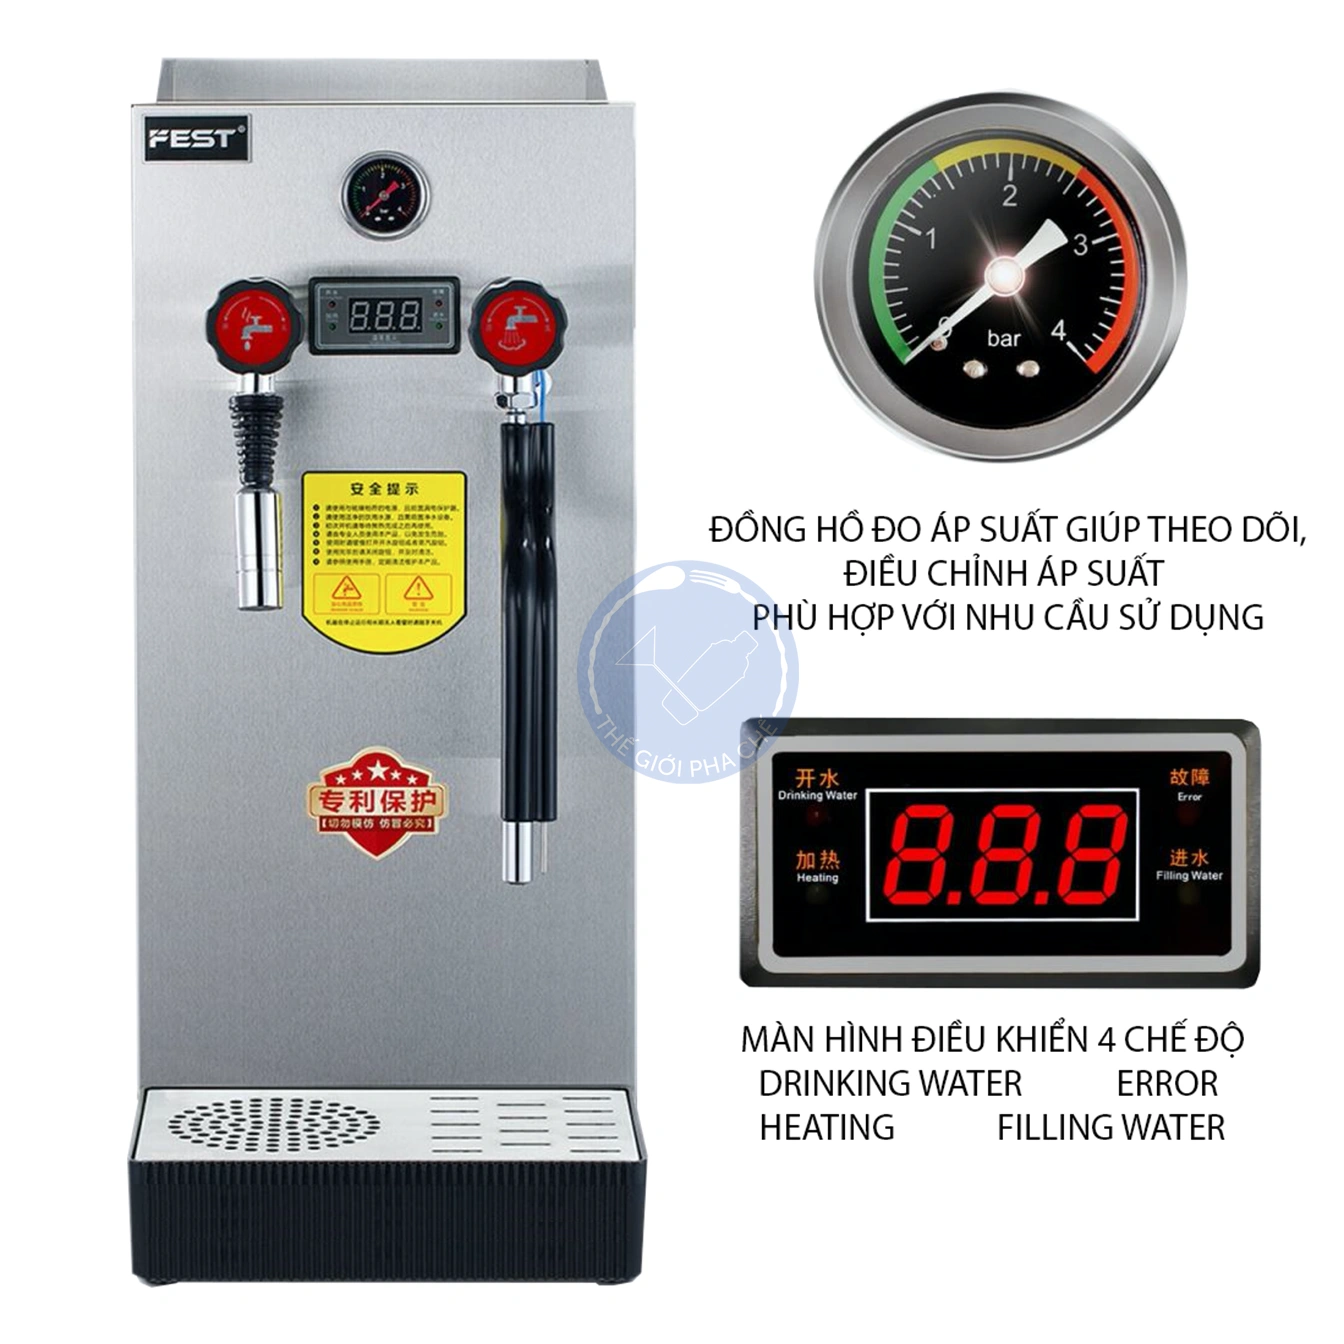 Máy đun nước nóng áp suất cao FEST RC-800H